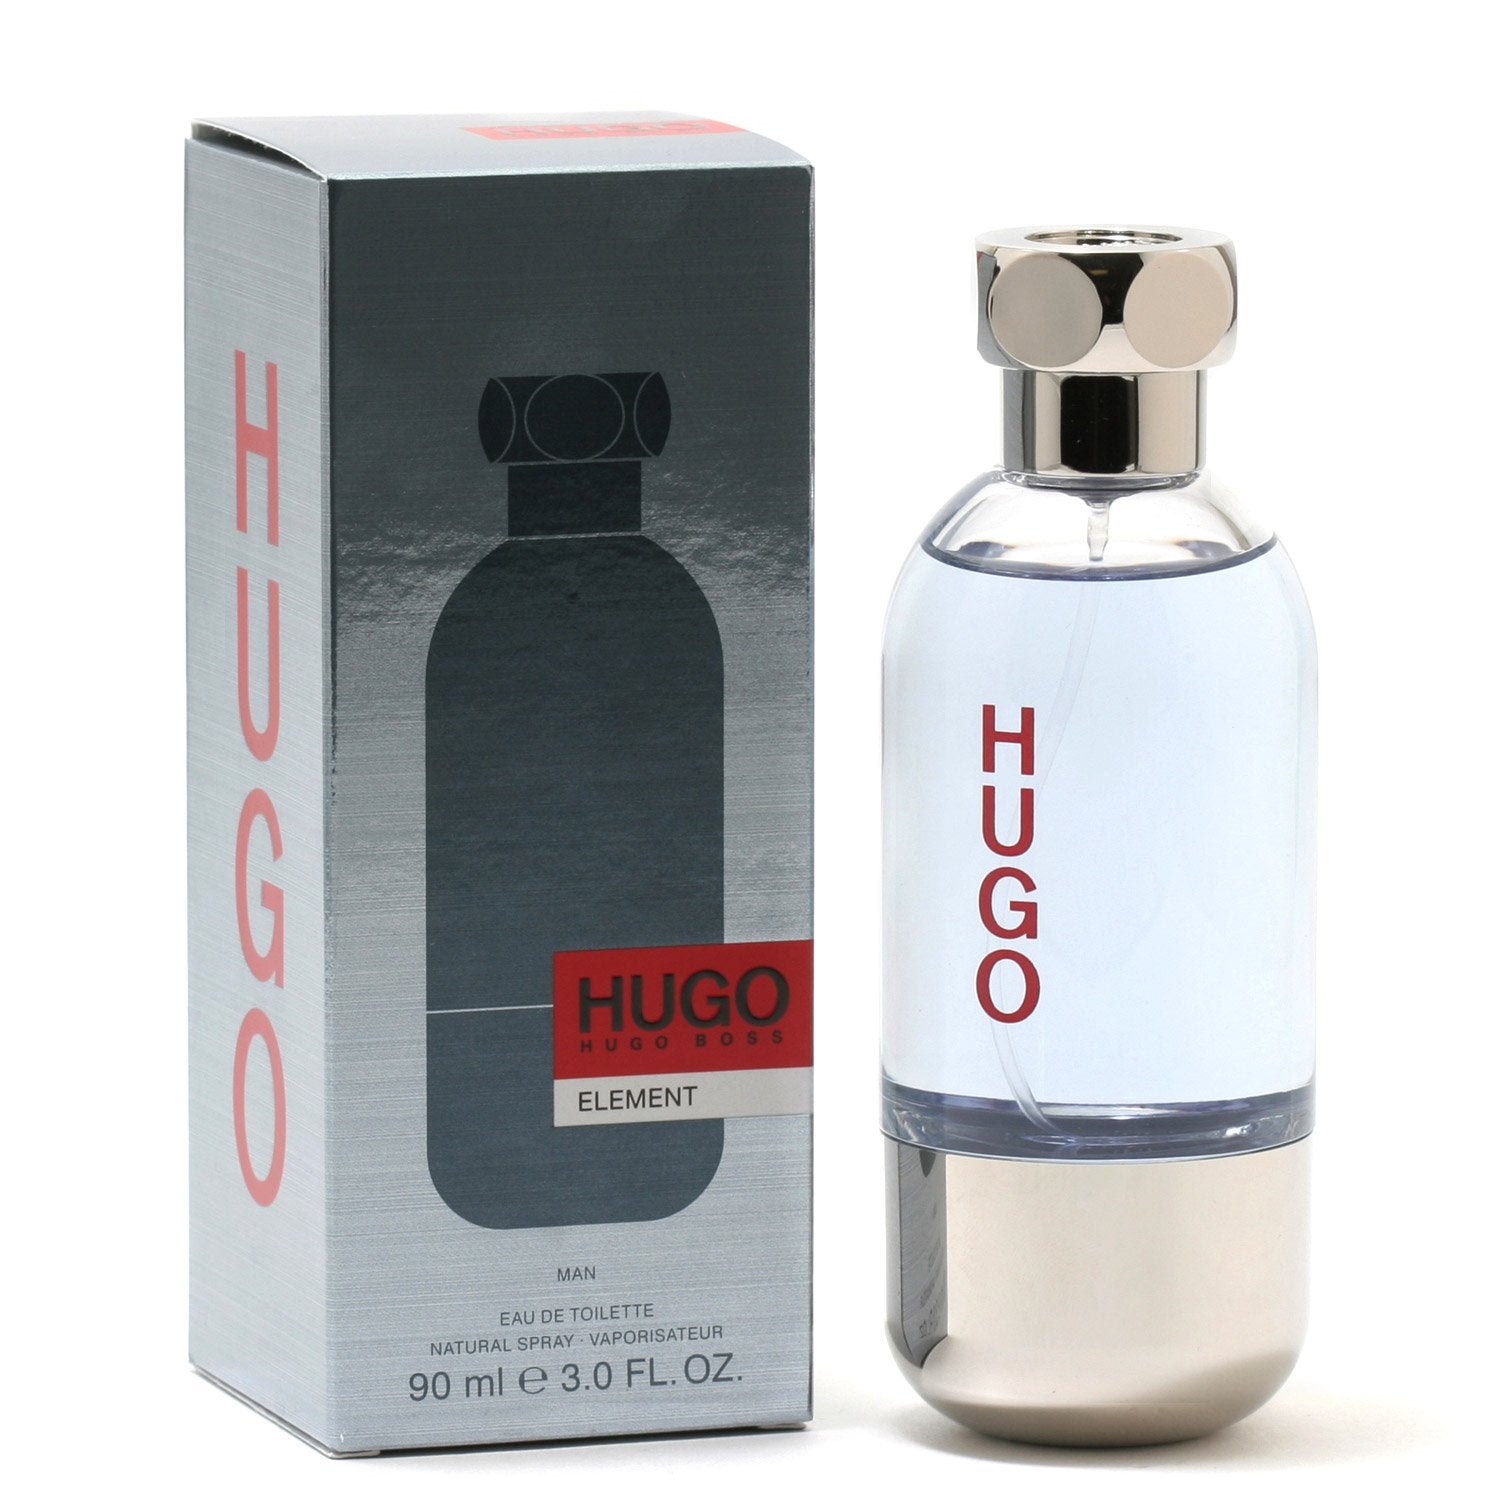 HUGO ELEMENT FOR MEN BY HUGO BOSS DE TOILETTE SPRAY Fragrance Room